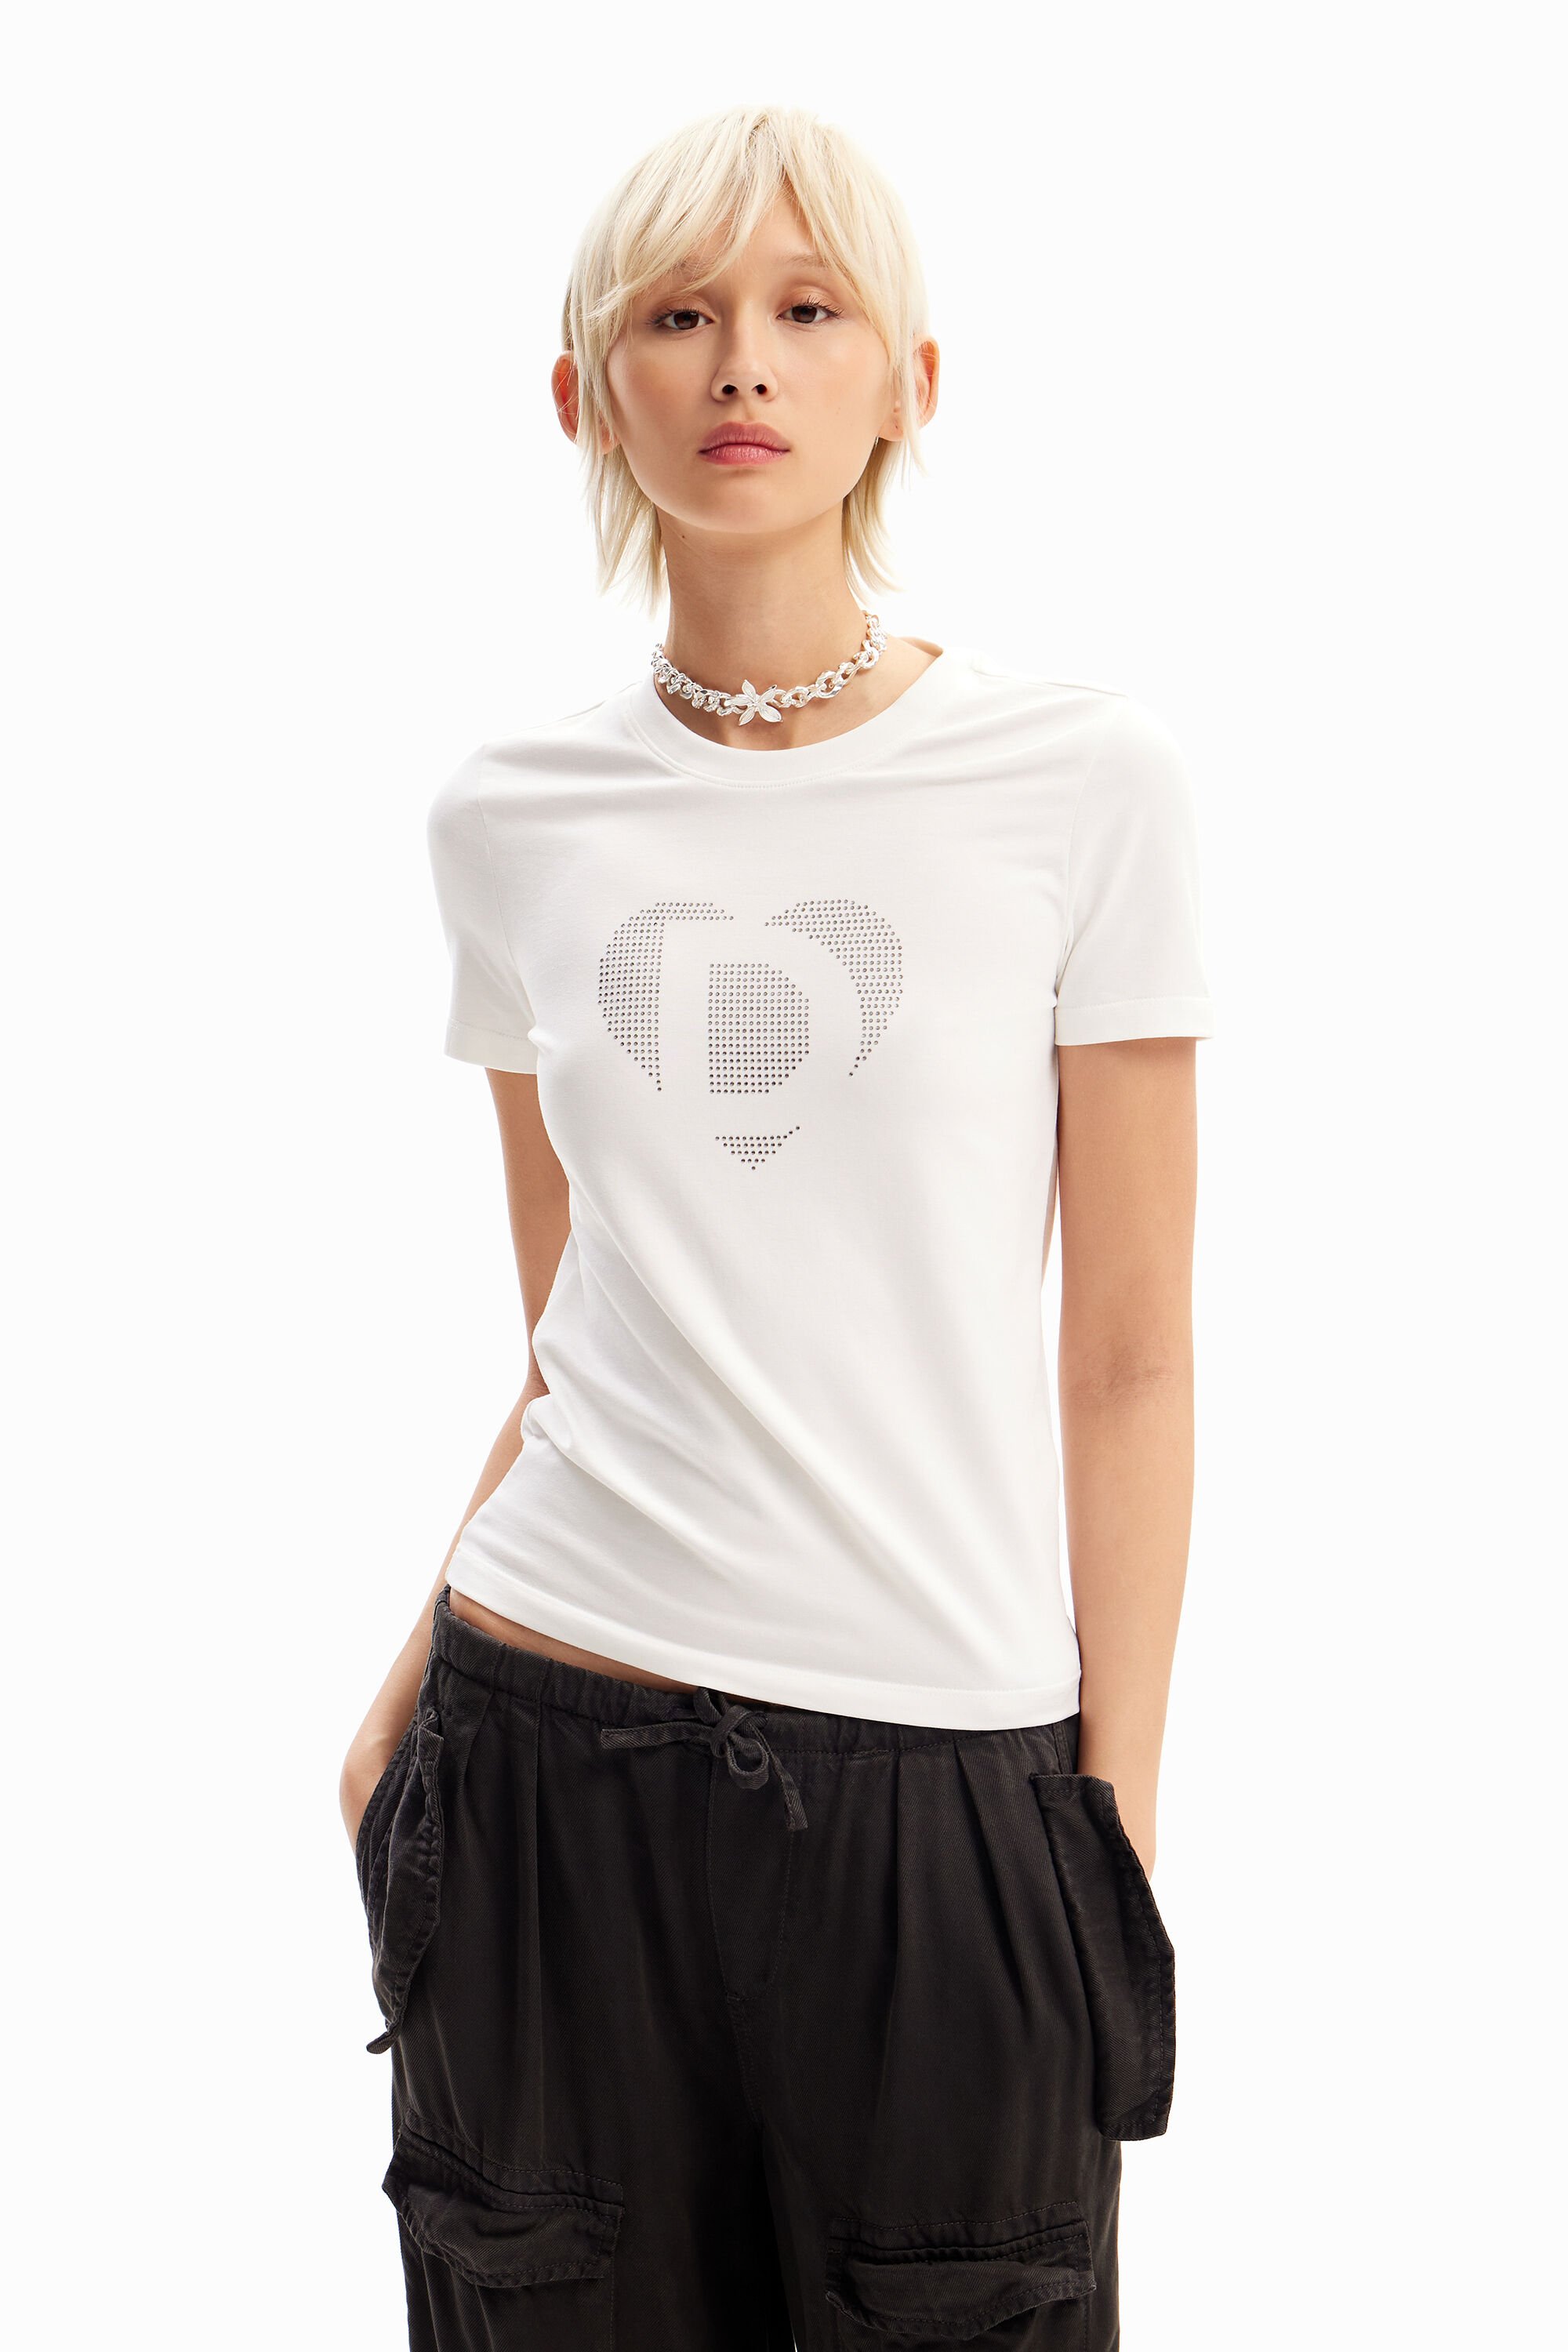 Rhinestone imagotype T-shirt - WHITE - XS